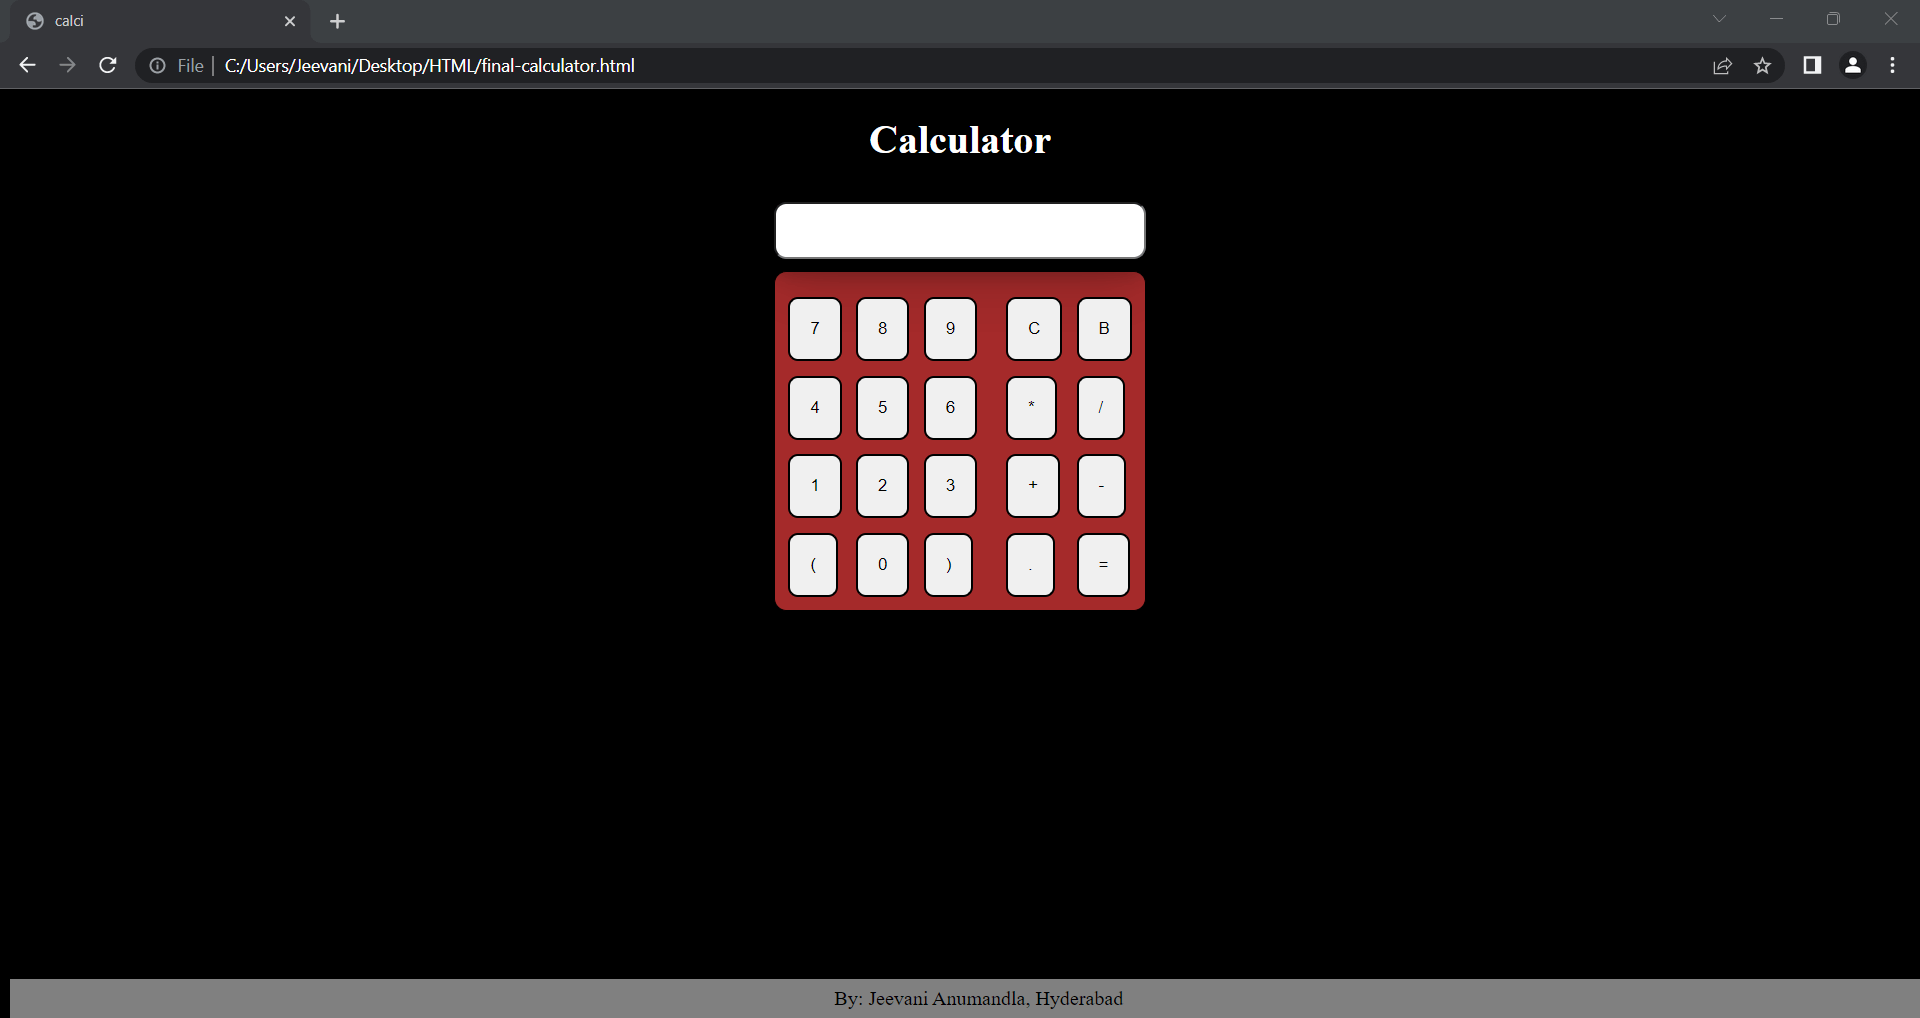 Calculator using Shunting yard algorithm in HTML using JavaScript